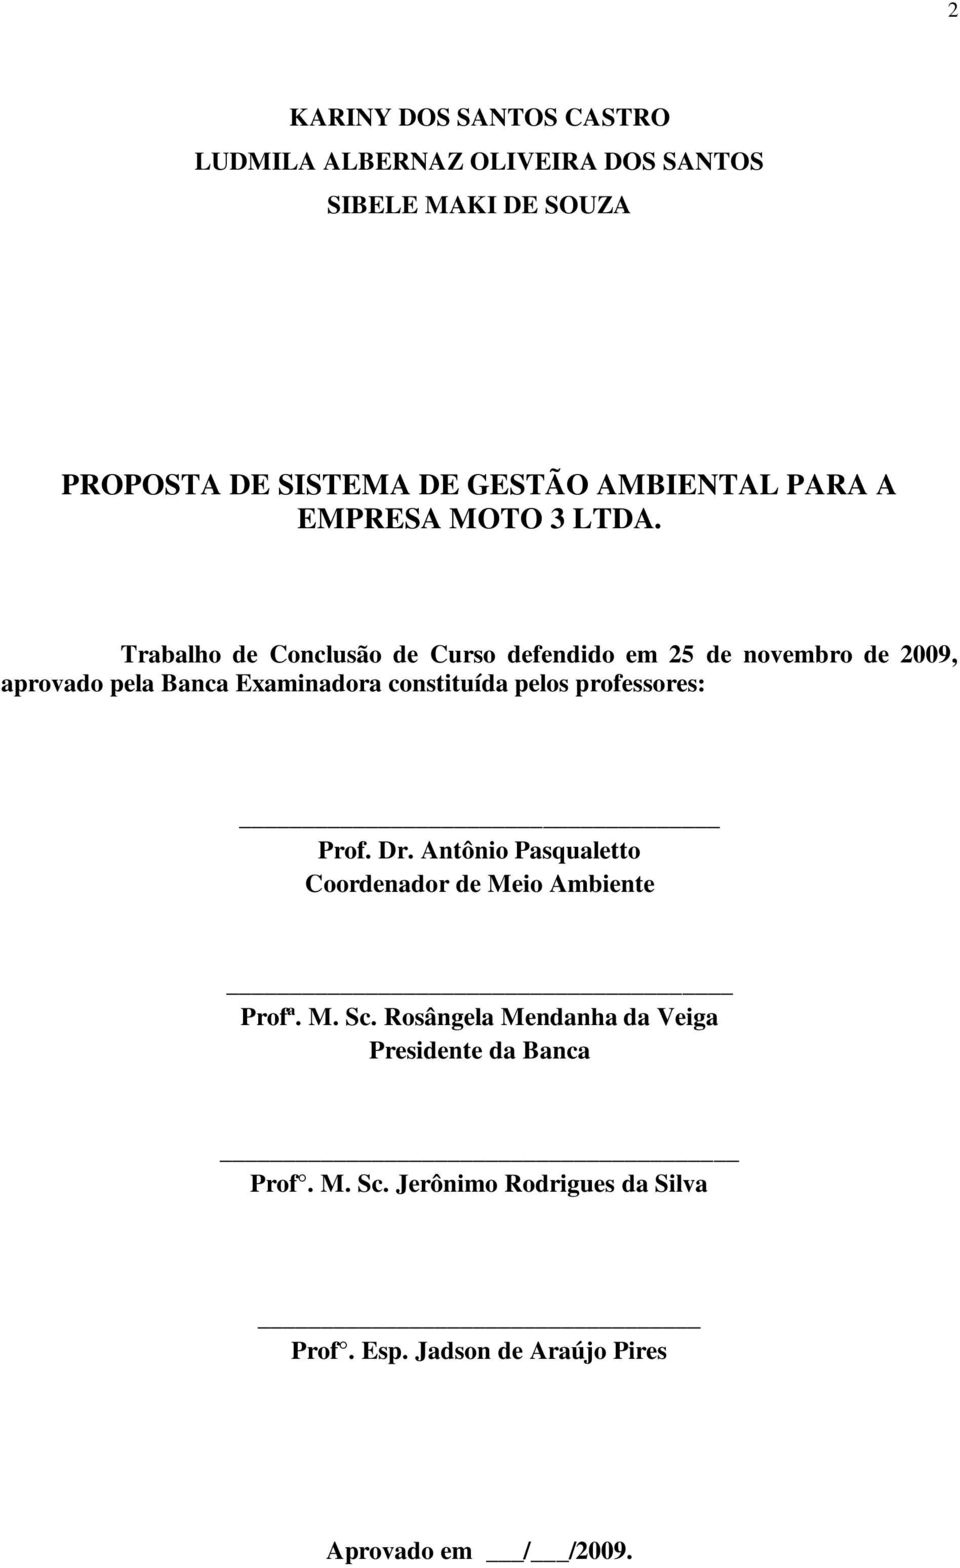 Trabalho de Conclusão de Curso defendido em 25 de novembro de 2009, aprovado pela Banca Examinadora constituída pelos